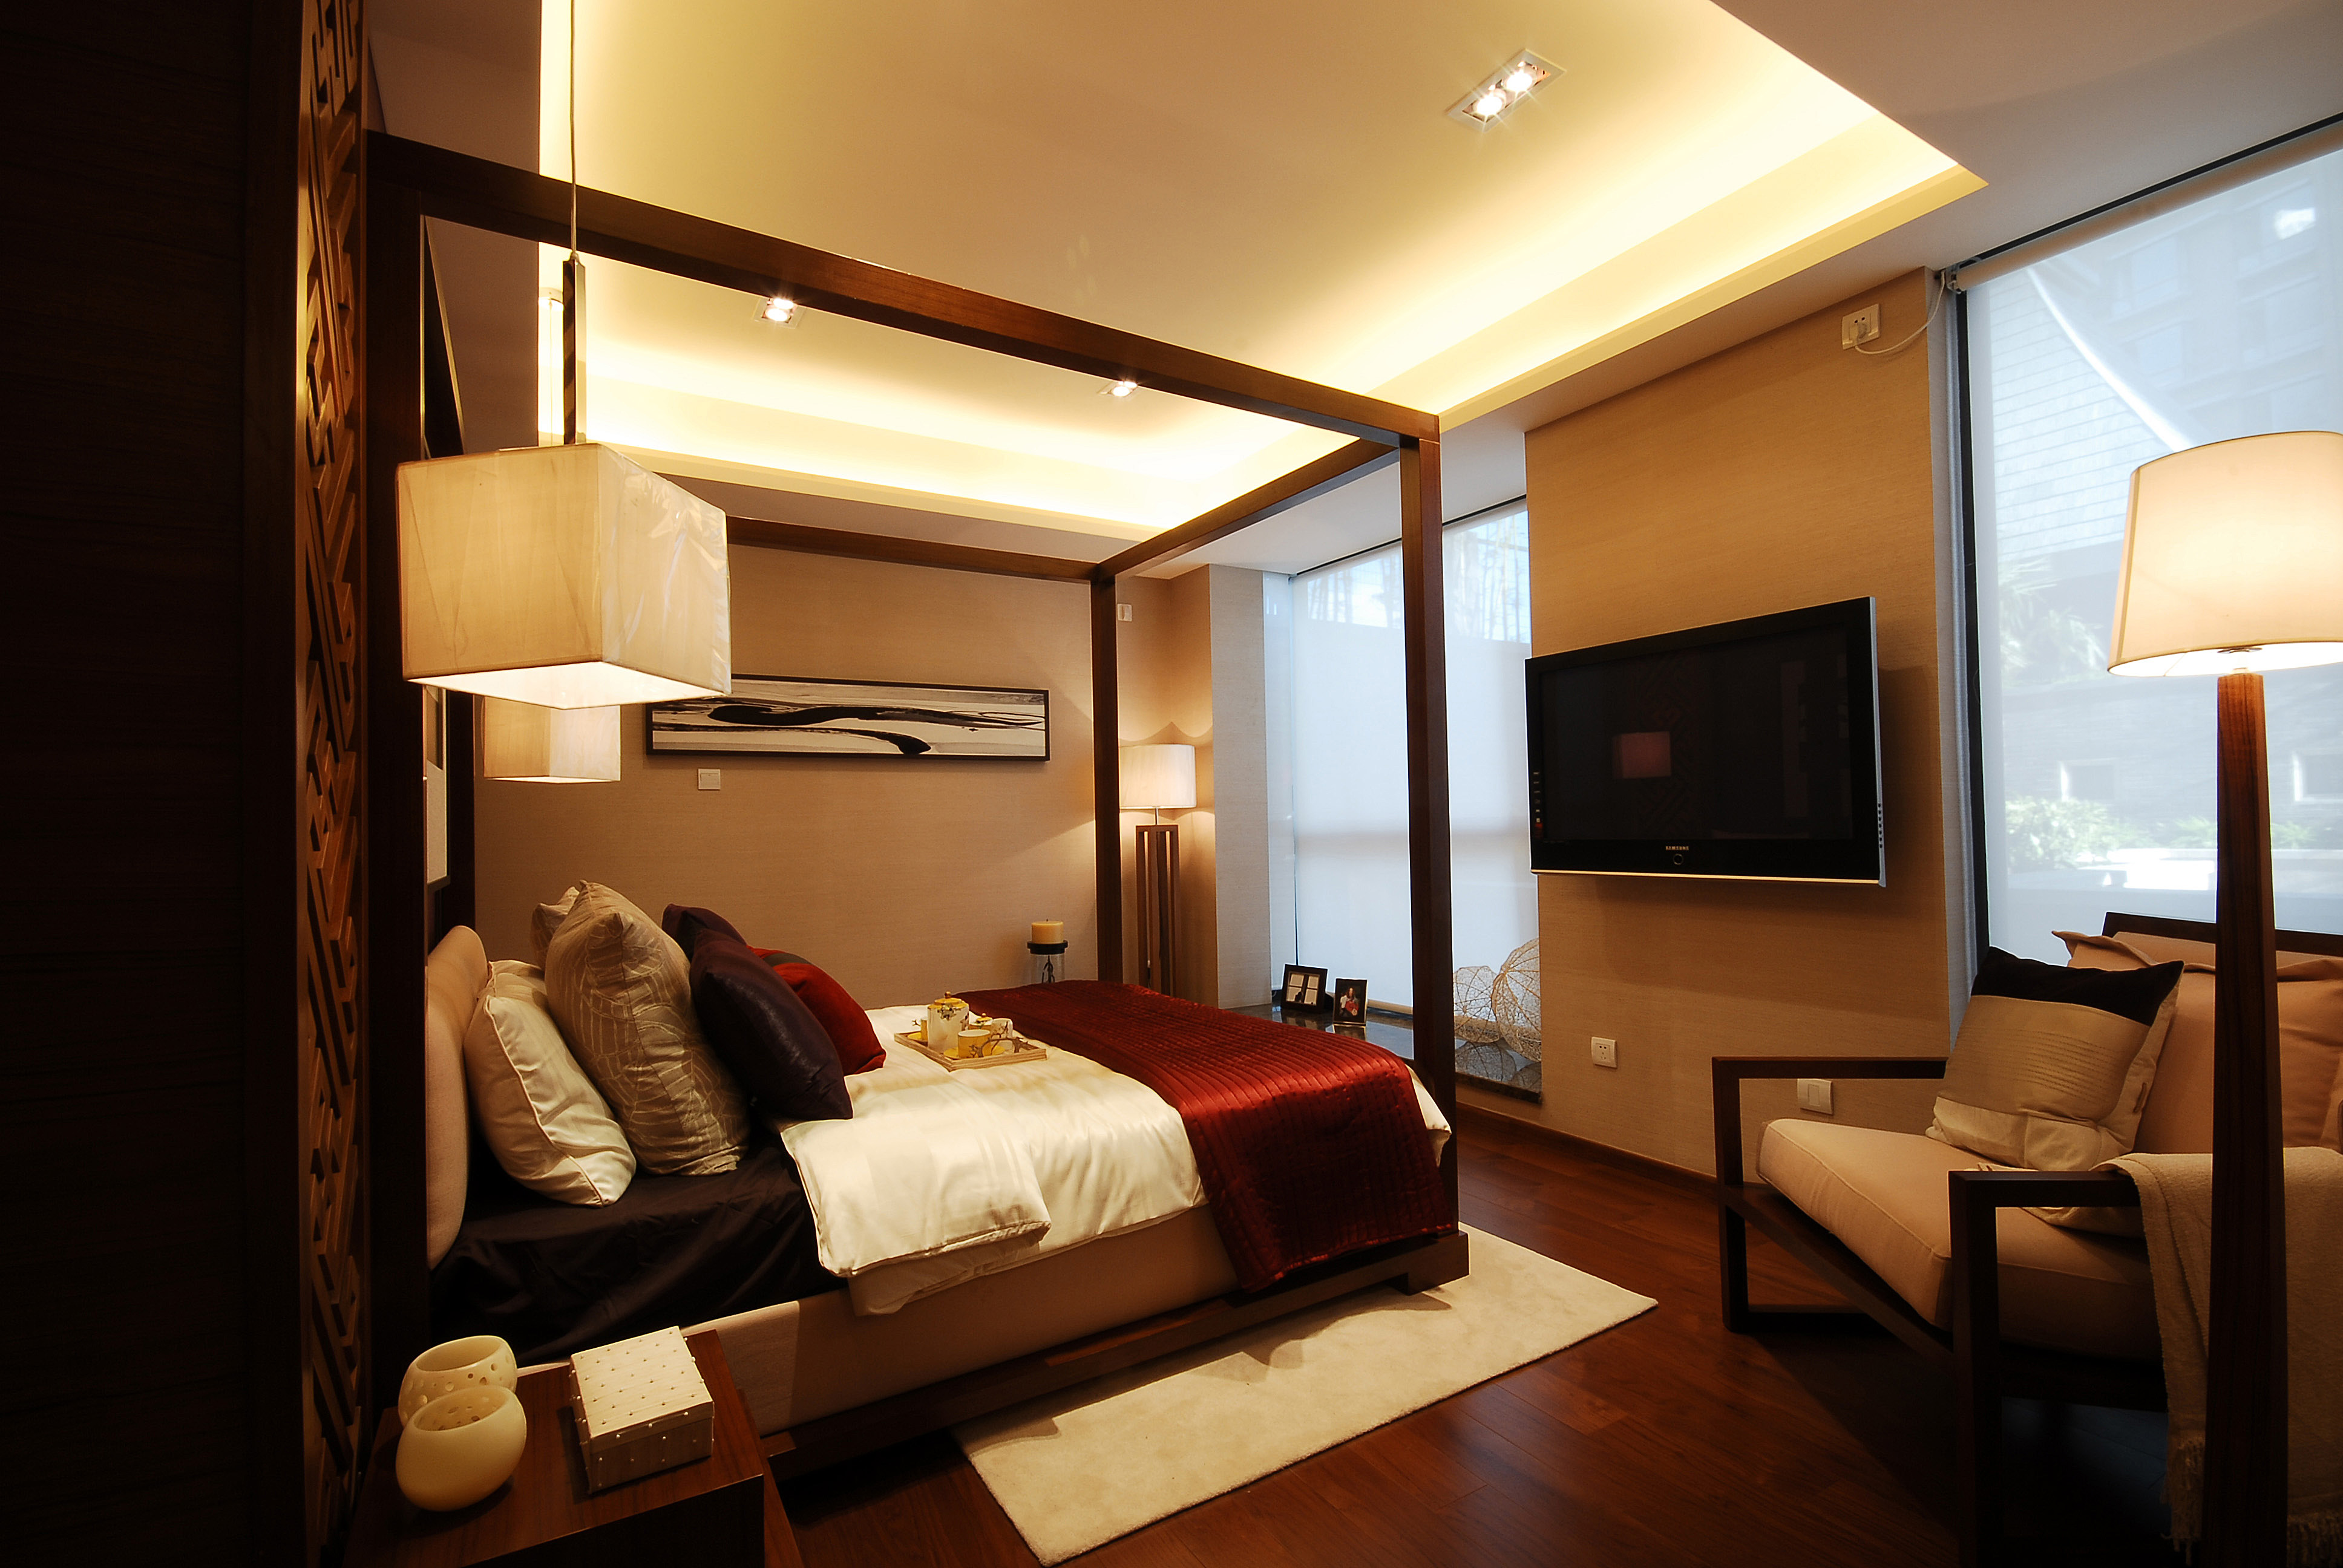 现代中式别墅卧室装修设计效果图